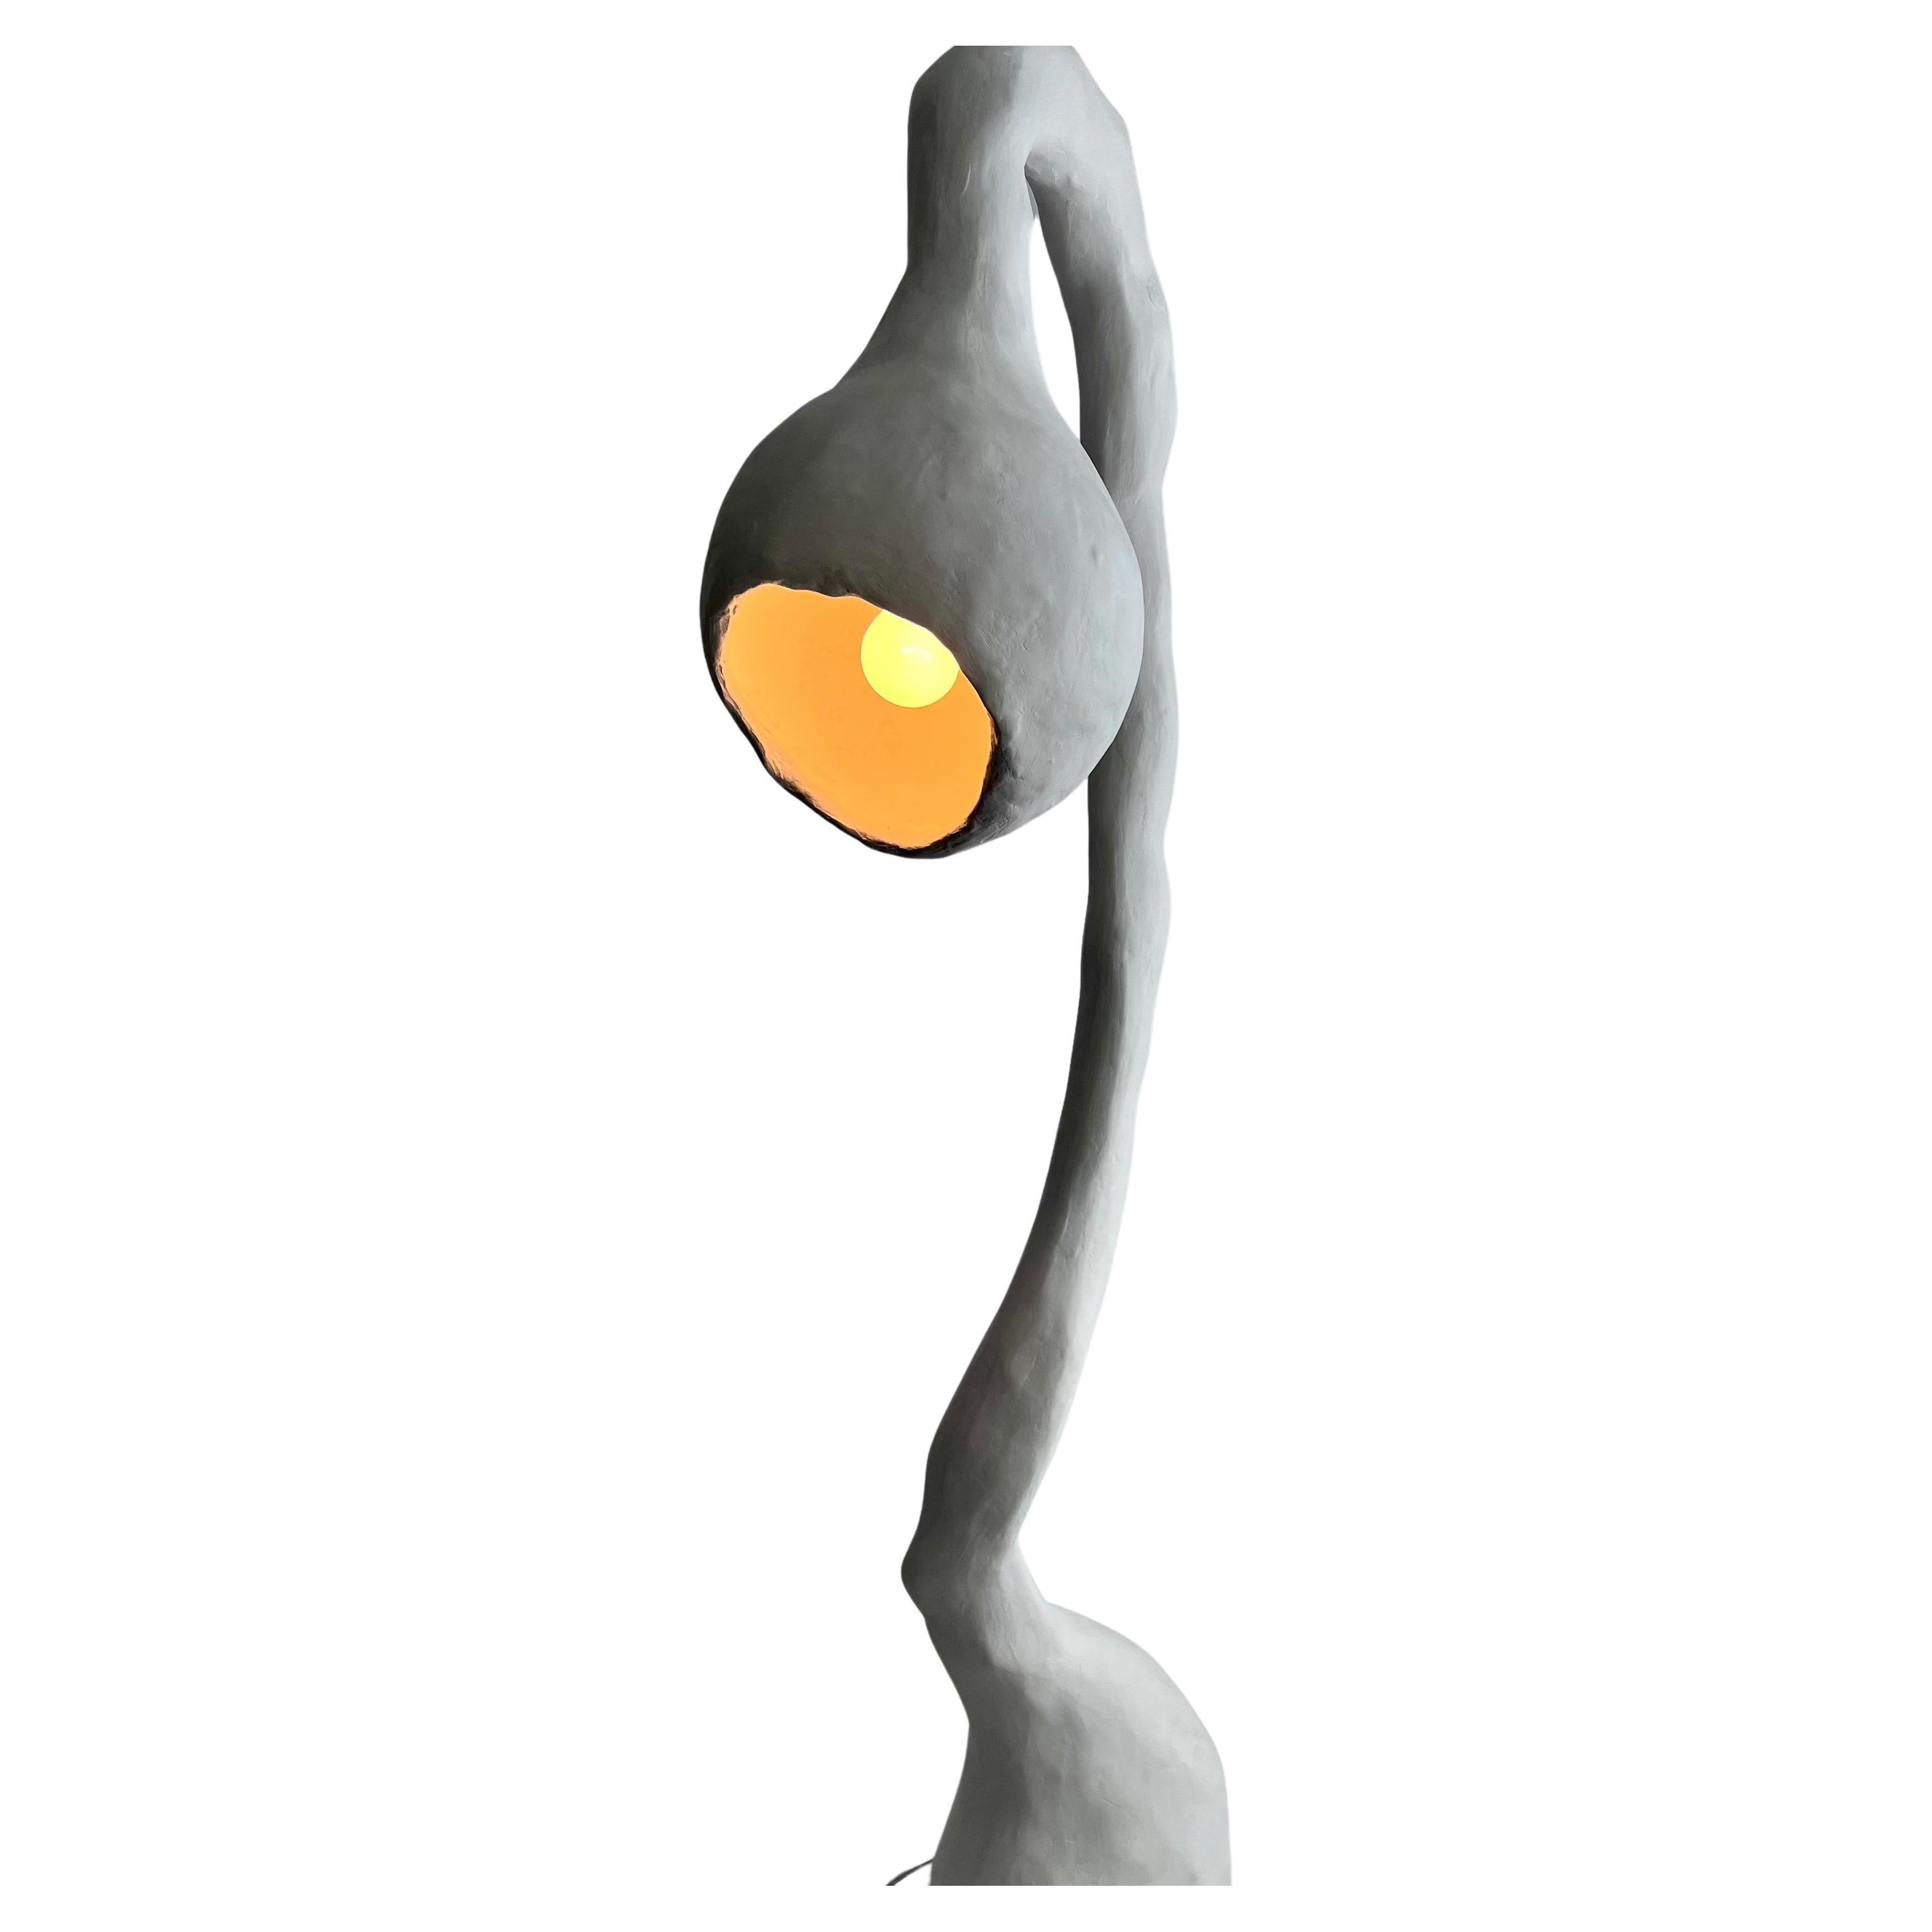 Biomorphe Leuchte von Studio Chora, Stehleuchte, weißer Kalkstein, auf Bestellung gefertigt